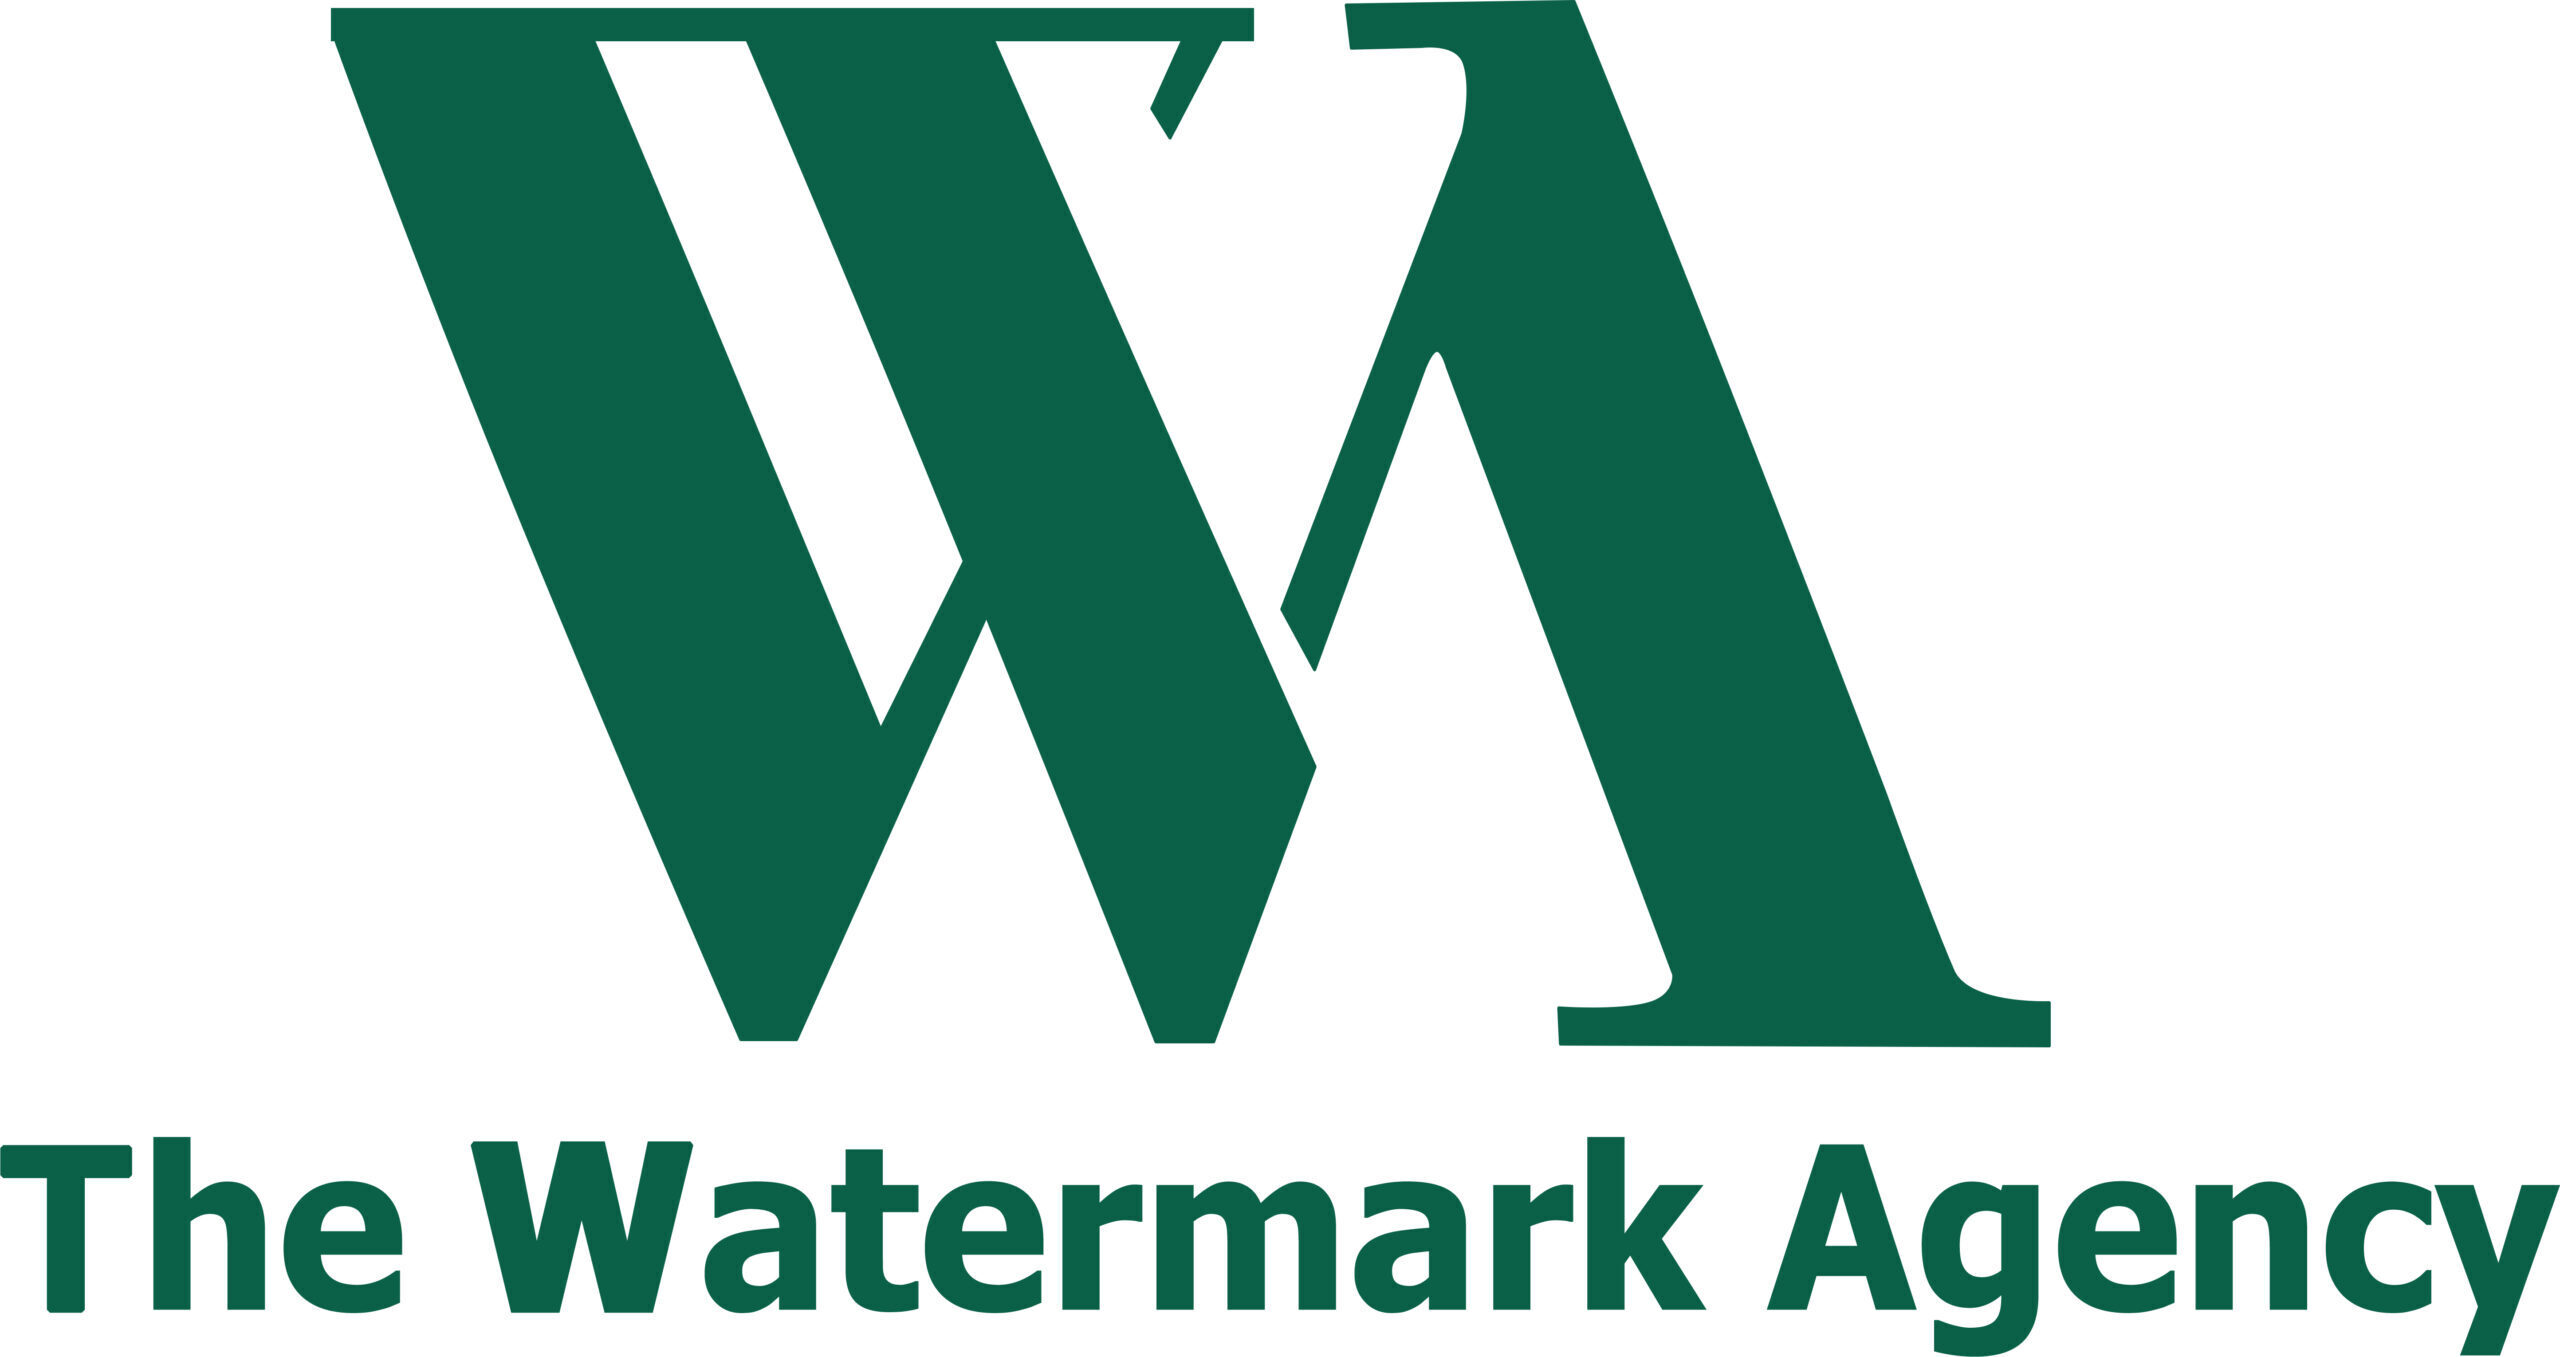 The Watermark Agency